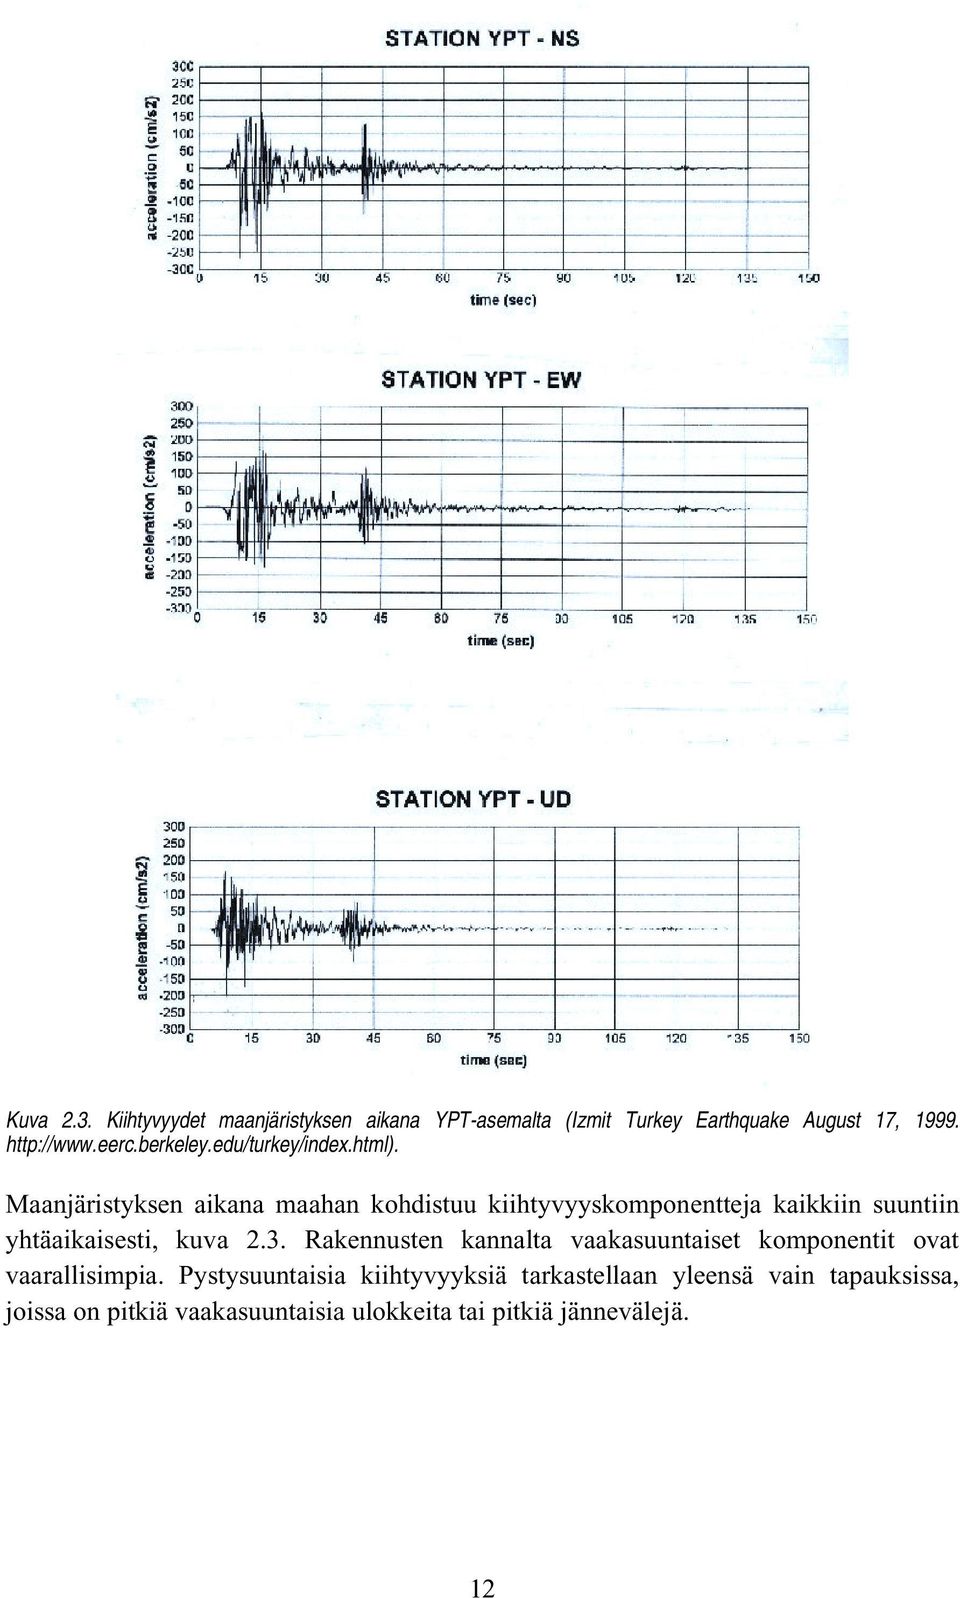 Maanjäristyksen aikana maahan kohdistuu kiihtyvyyskomponentteja kaikkiin suuntiin yhtäaikaisesti, kuva 2.3.